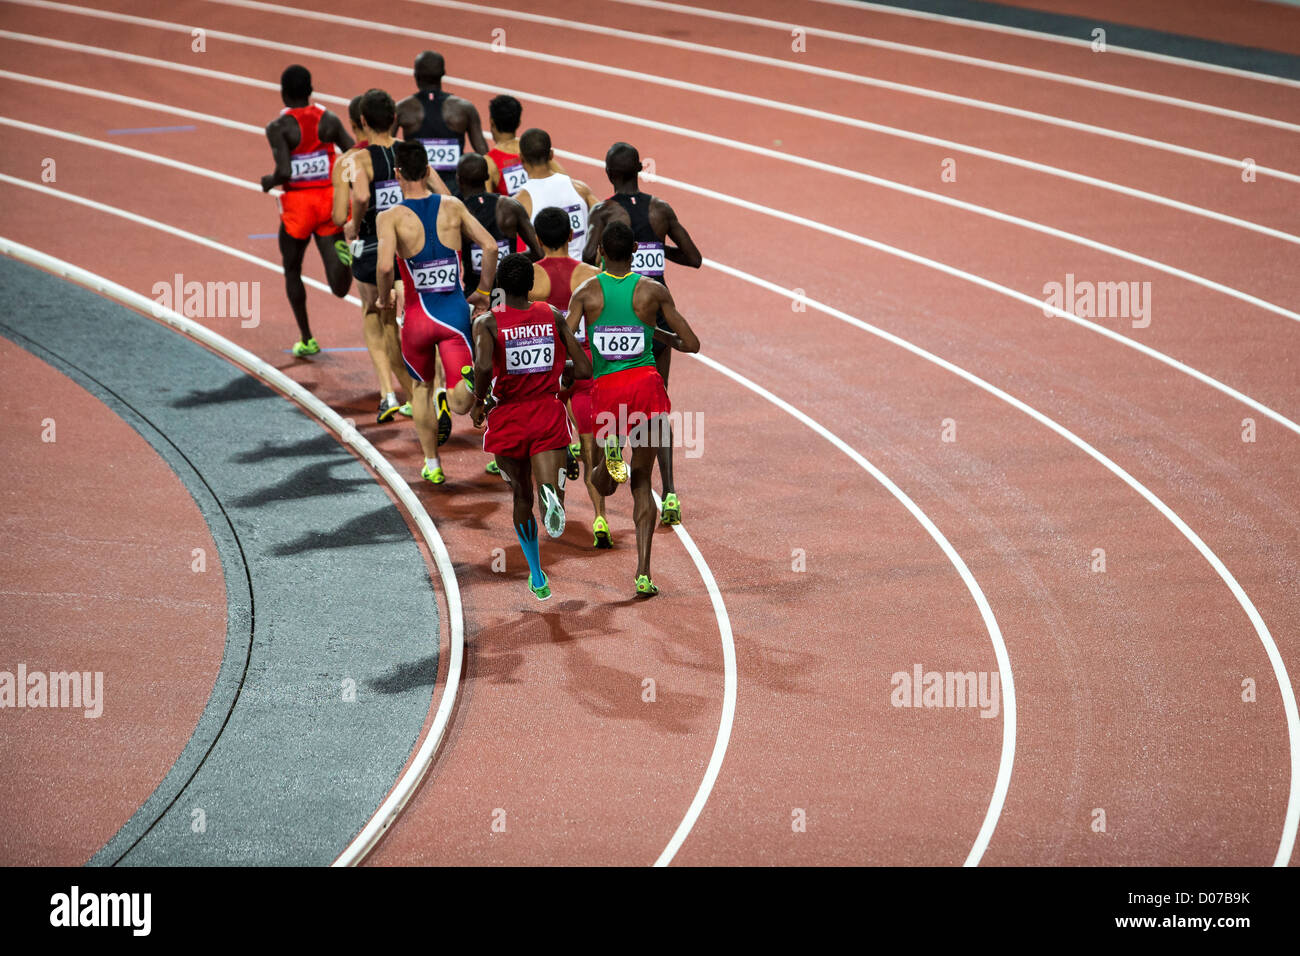 1500m hommes en finale des Jeux Olympiques d'été, Londres 2012 Banque D'Images